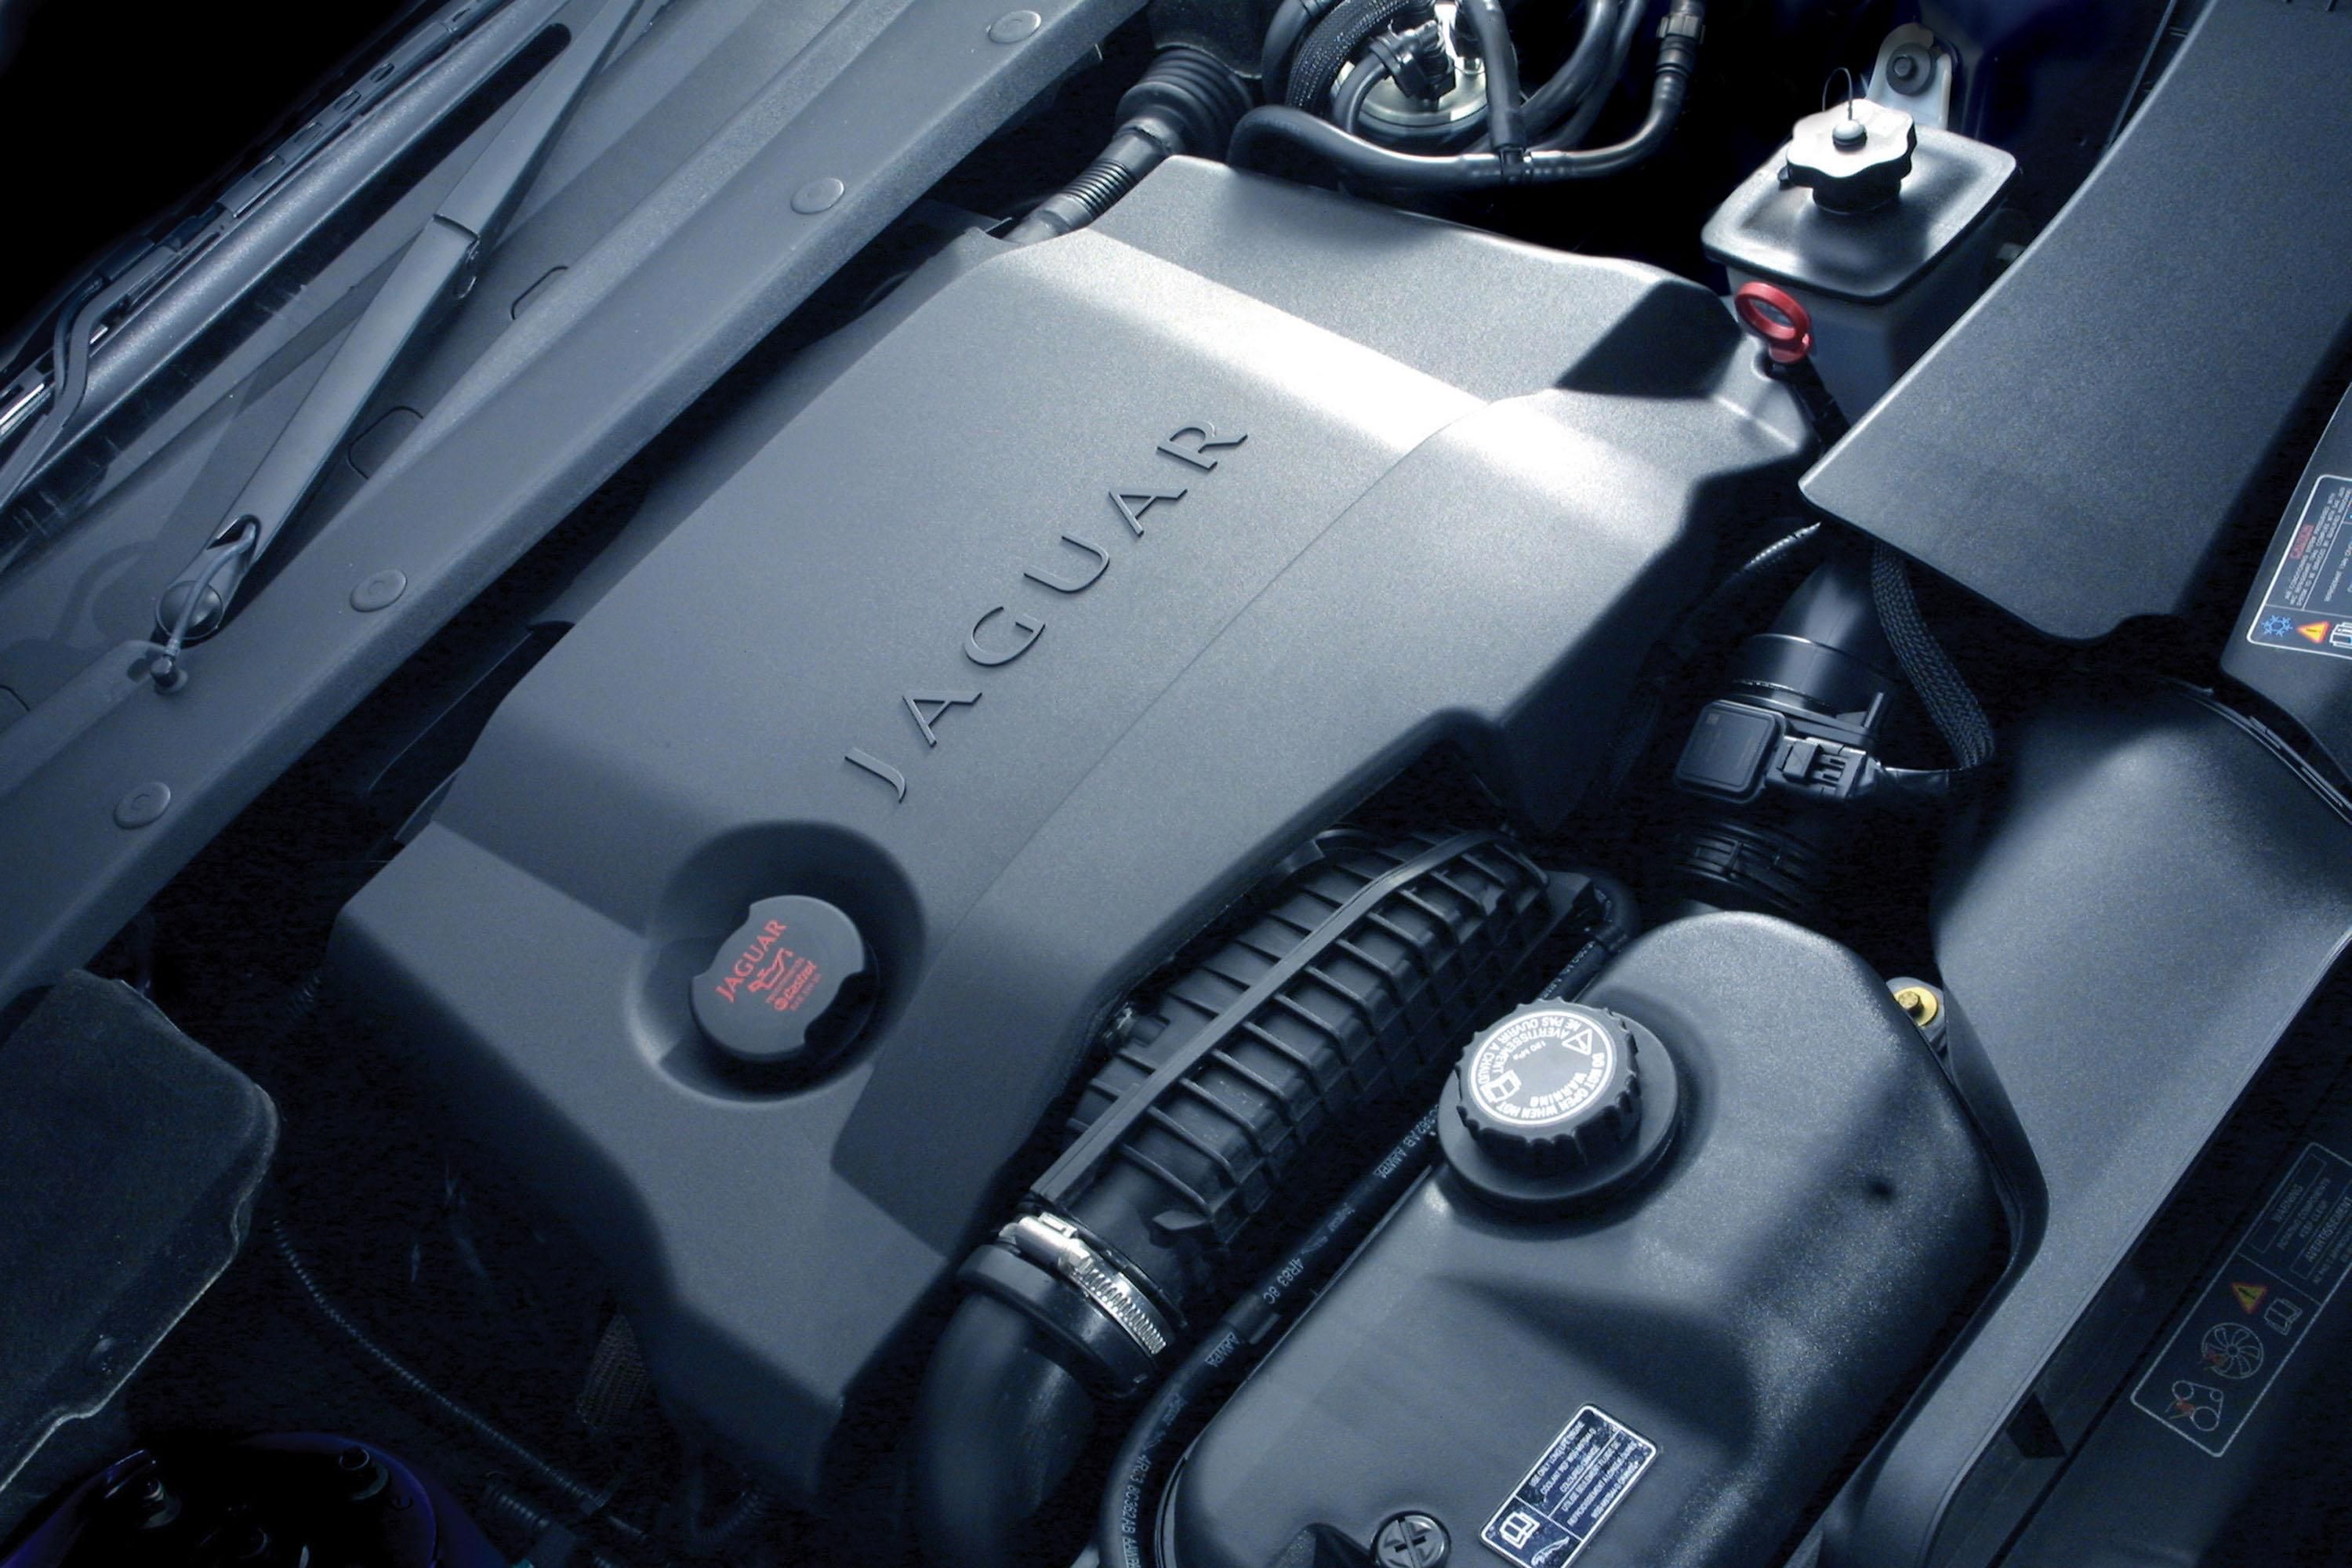 2006 Jaguar S-Type Diesel